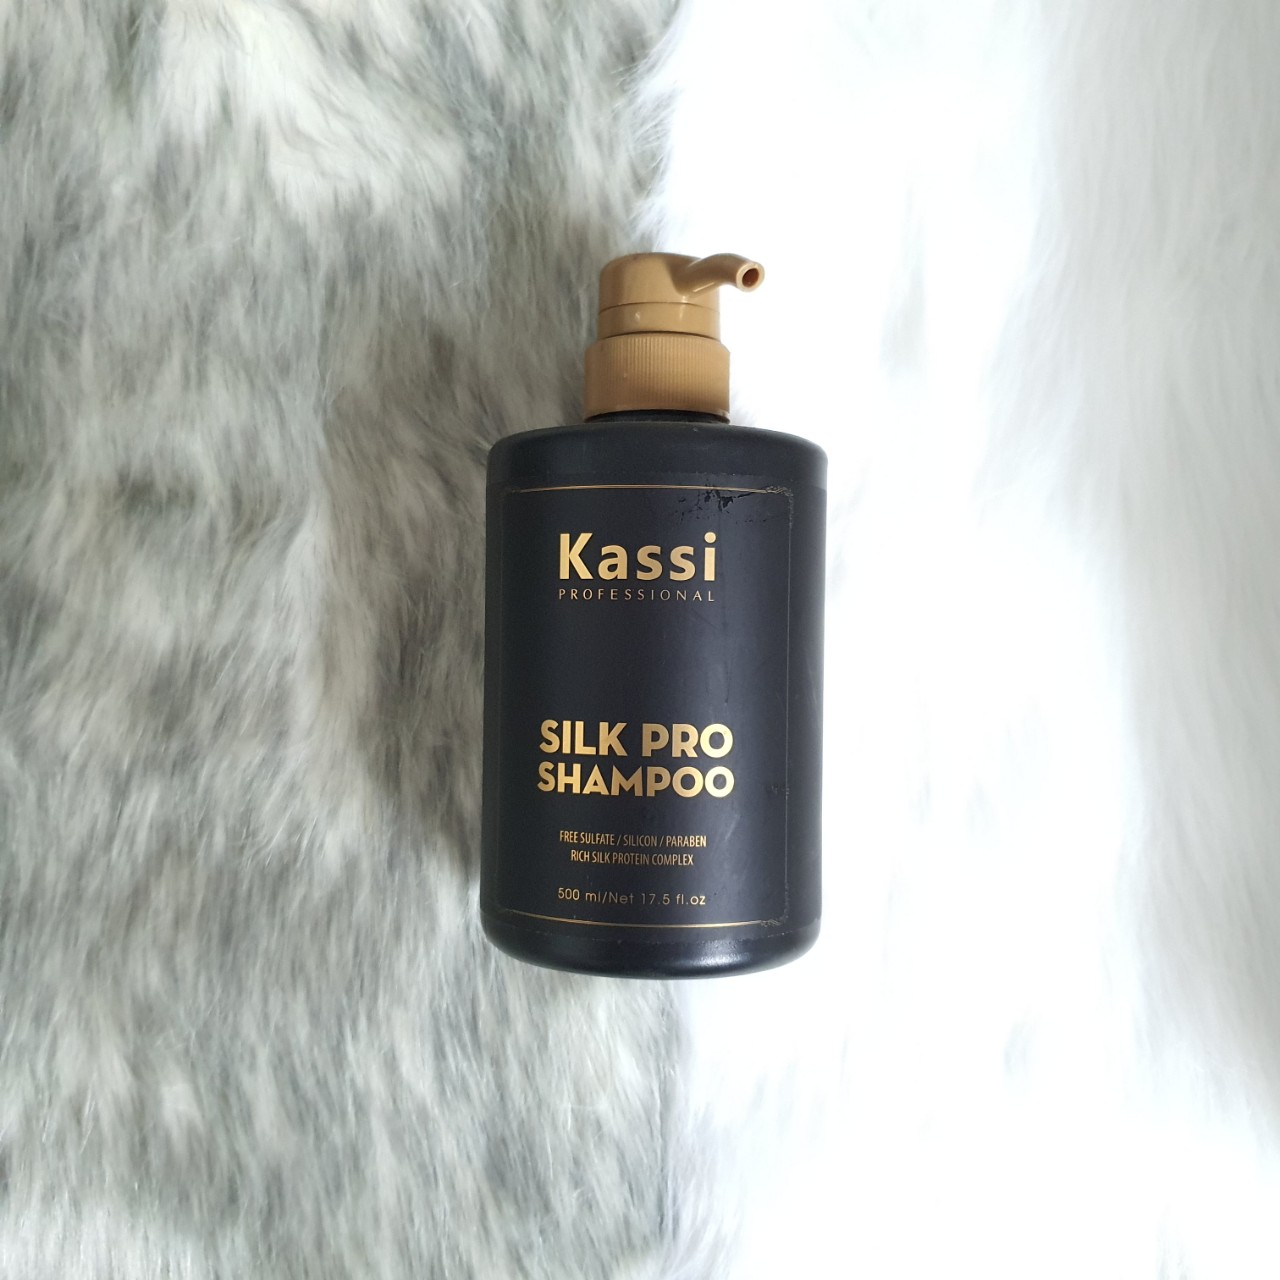 Nhuộm tóc Kassi giúp bạn sở hữu mái tóc thay đổi màu sắc nhanh chóng và an toàn. Sản phẩm được chiết xuất từ thiên nhiên, không chứa amoniac và PPD, đảm bảo an toàn cho tóc và da đầu. Xem ngay hình ảnh liên quan tại đây!